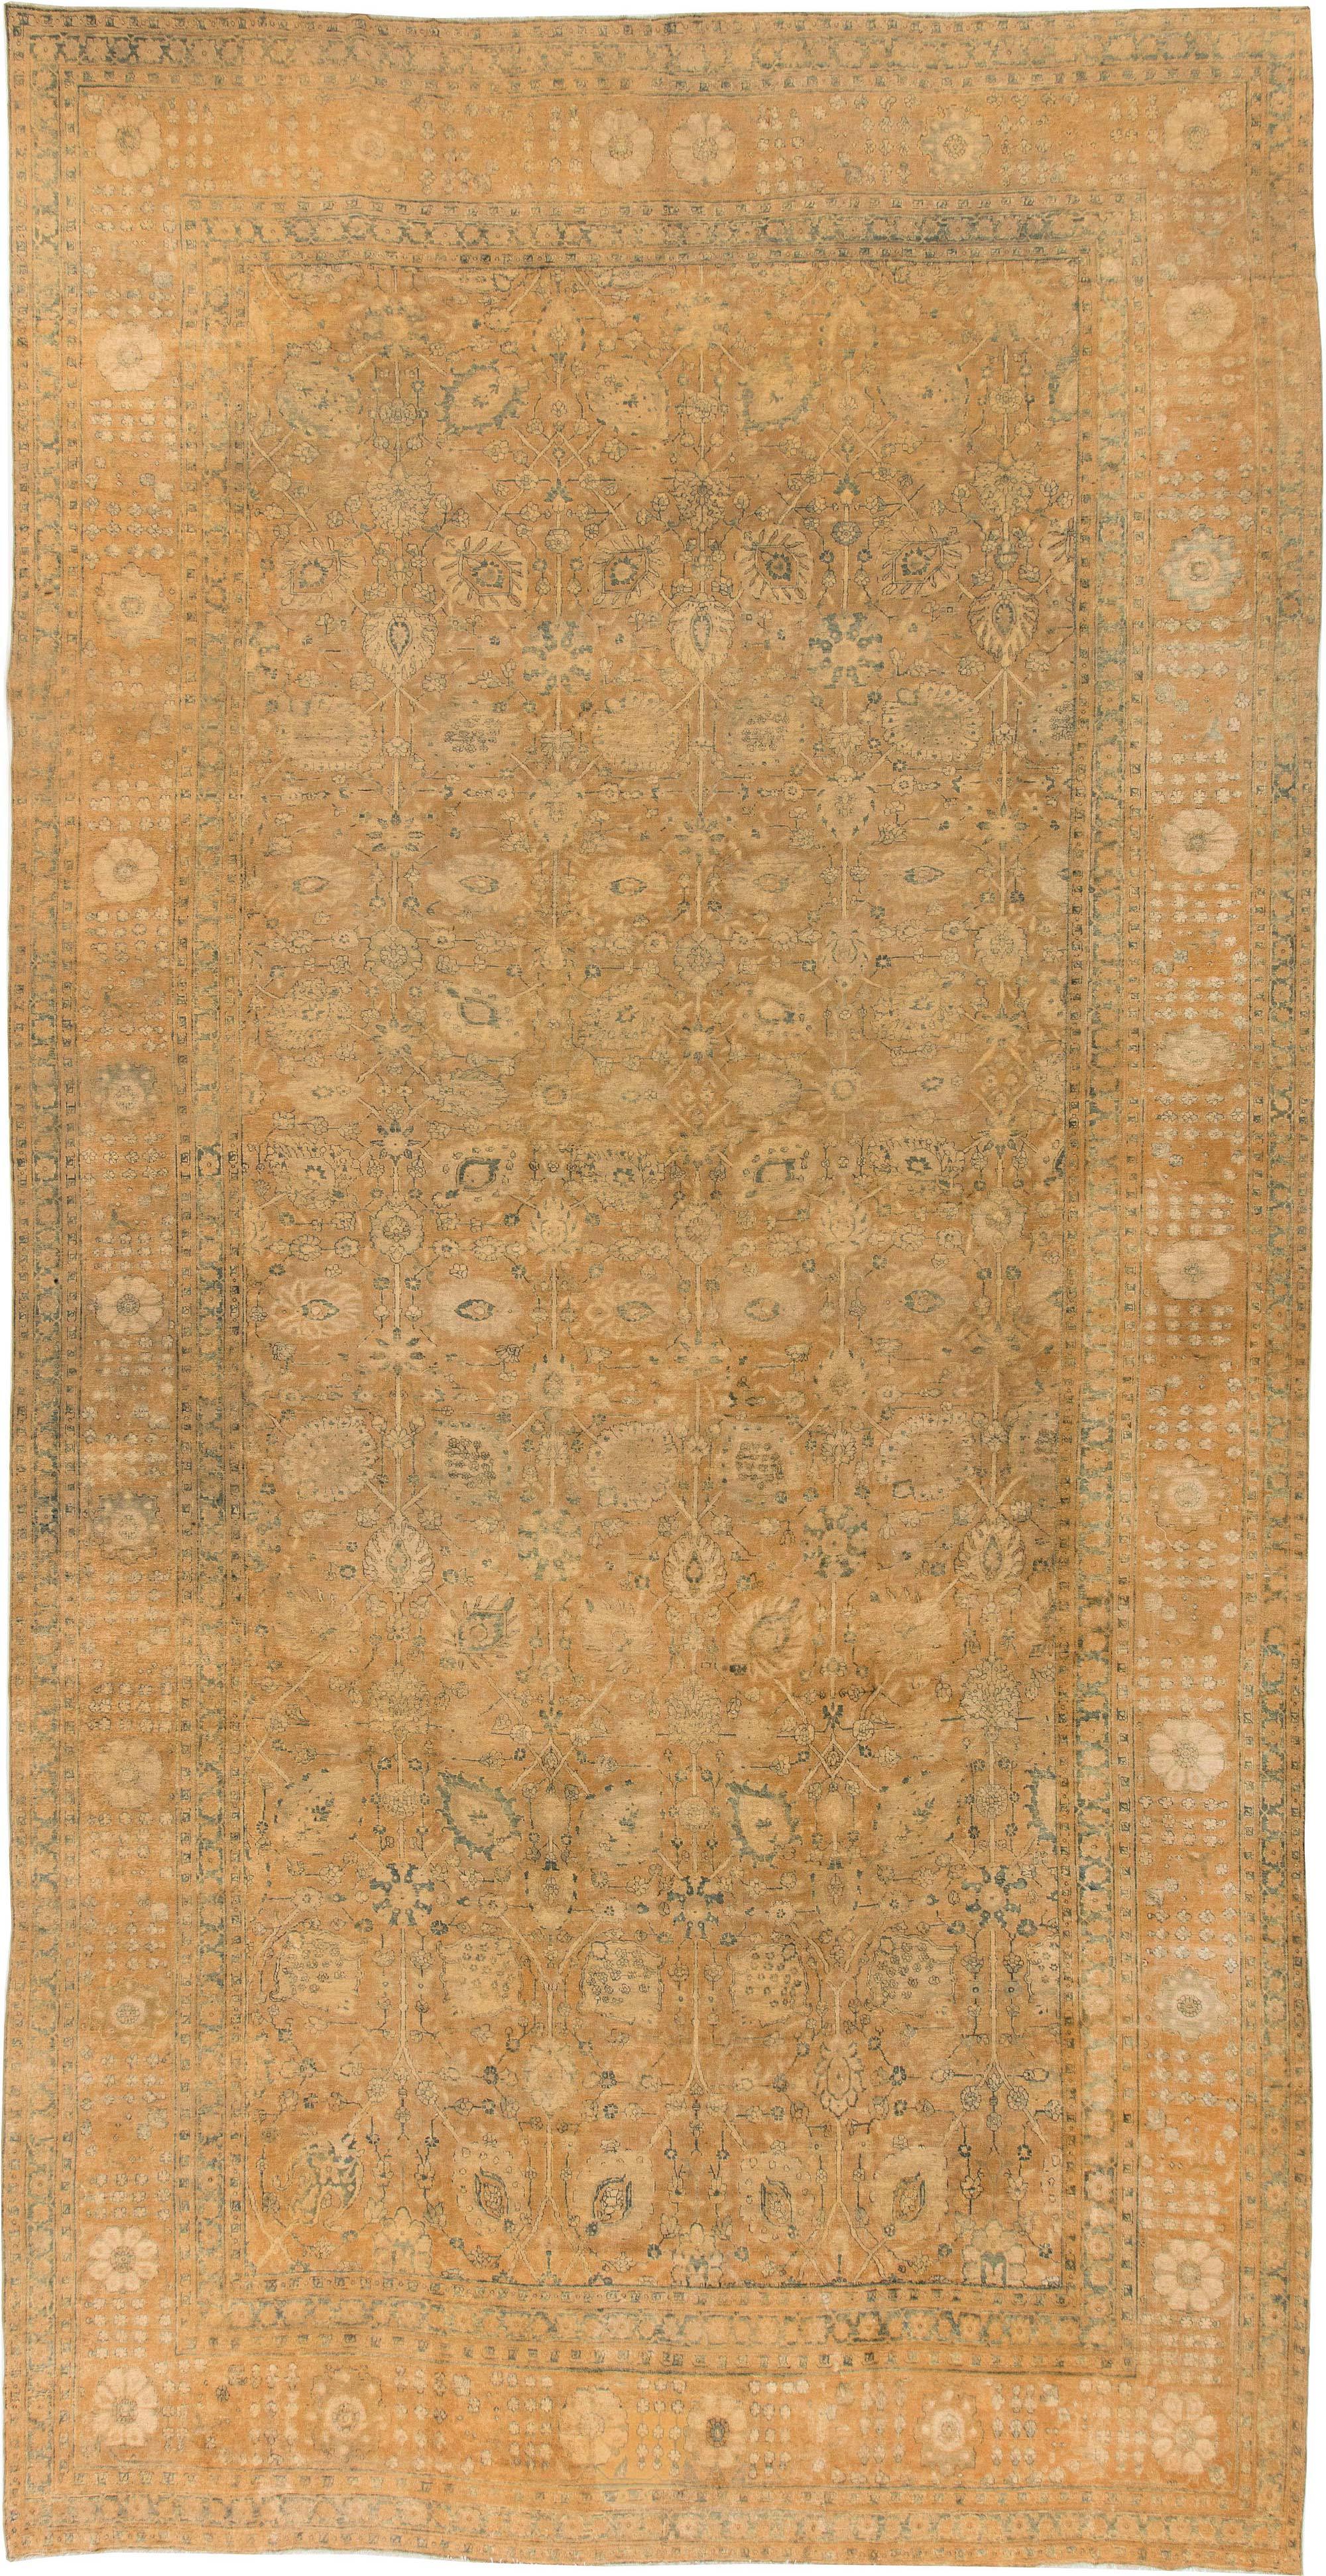 Antique Persian Tabriz Rug (Size Adjusted) For Sale